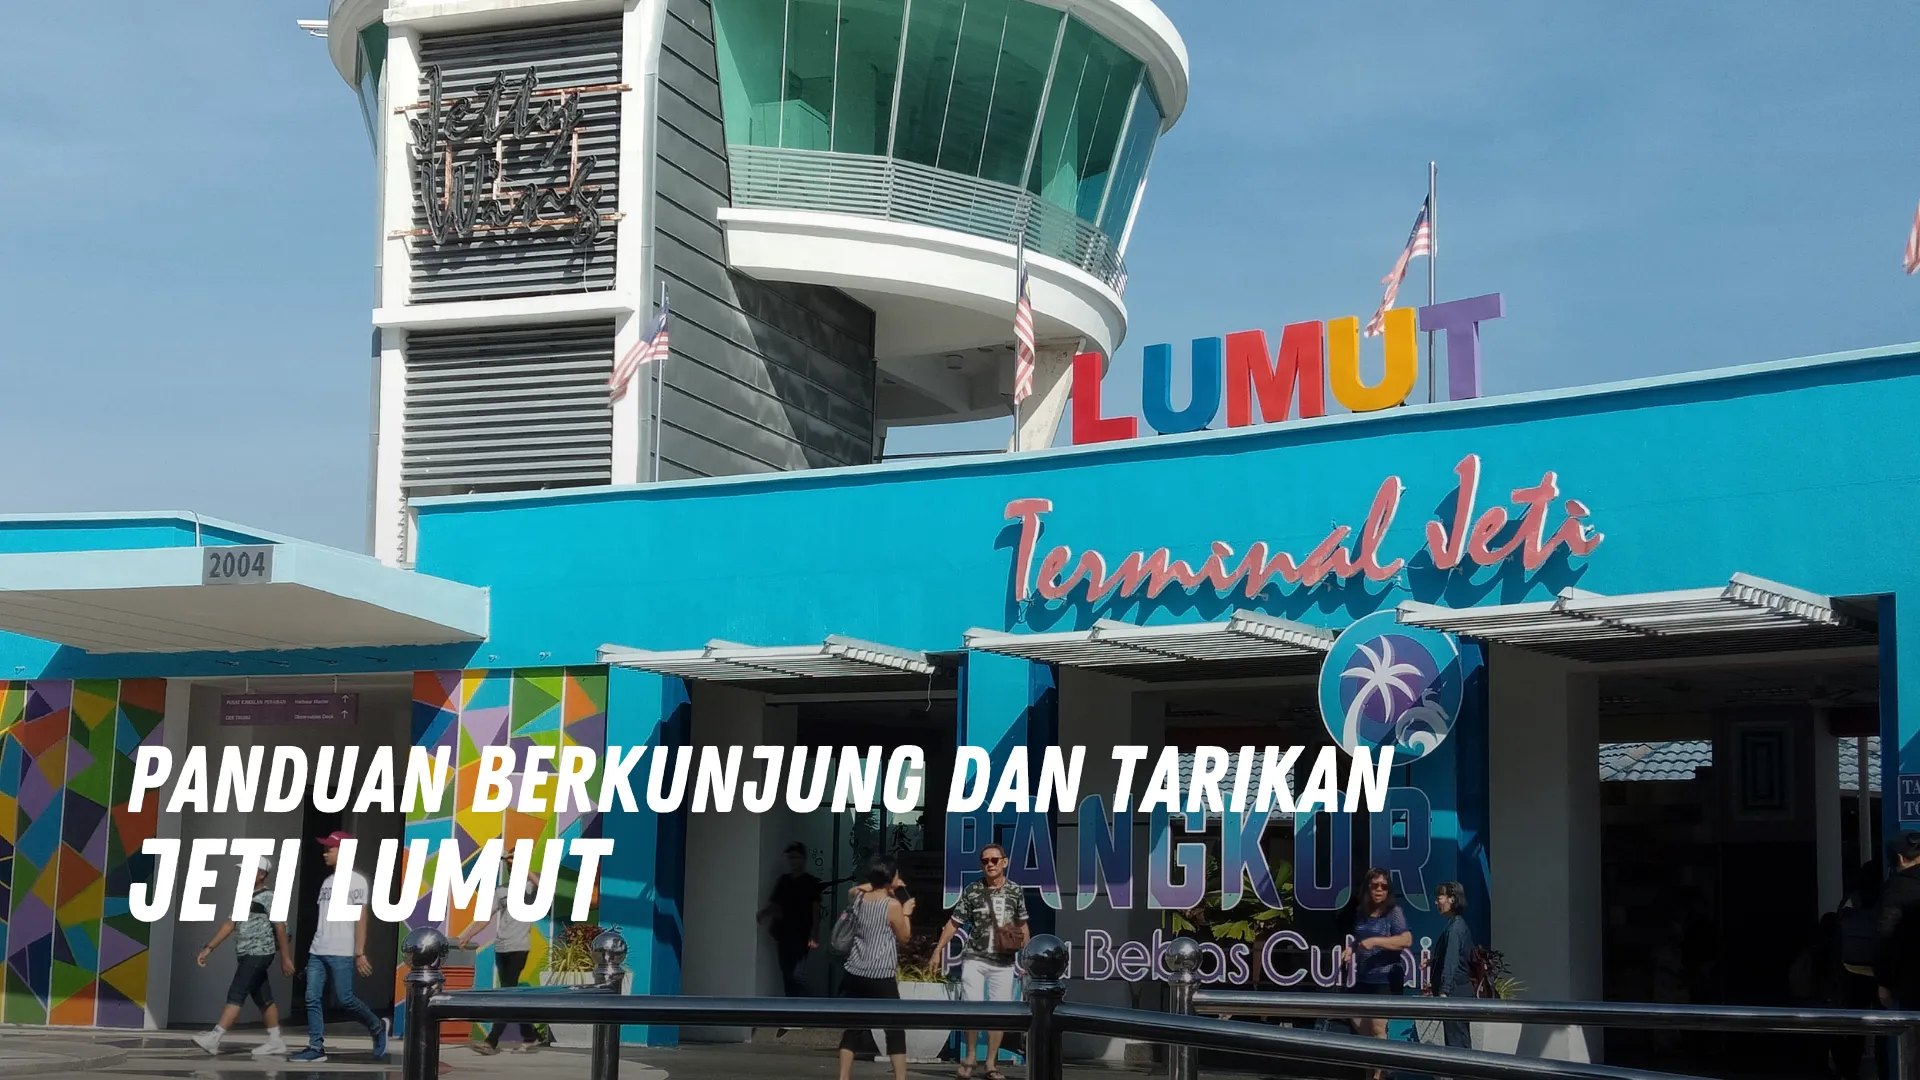 Review Jeti Lumut Malaysia